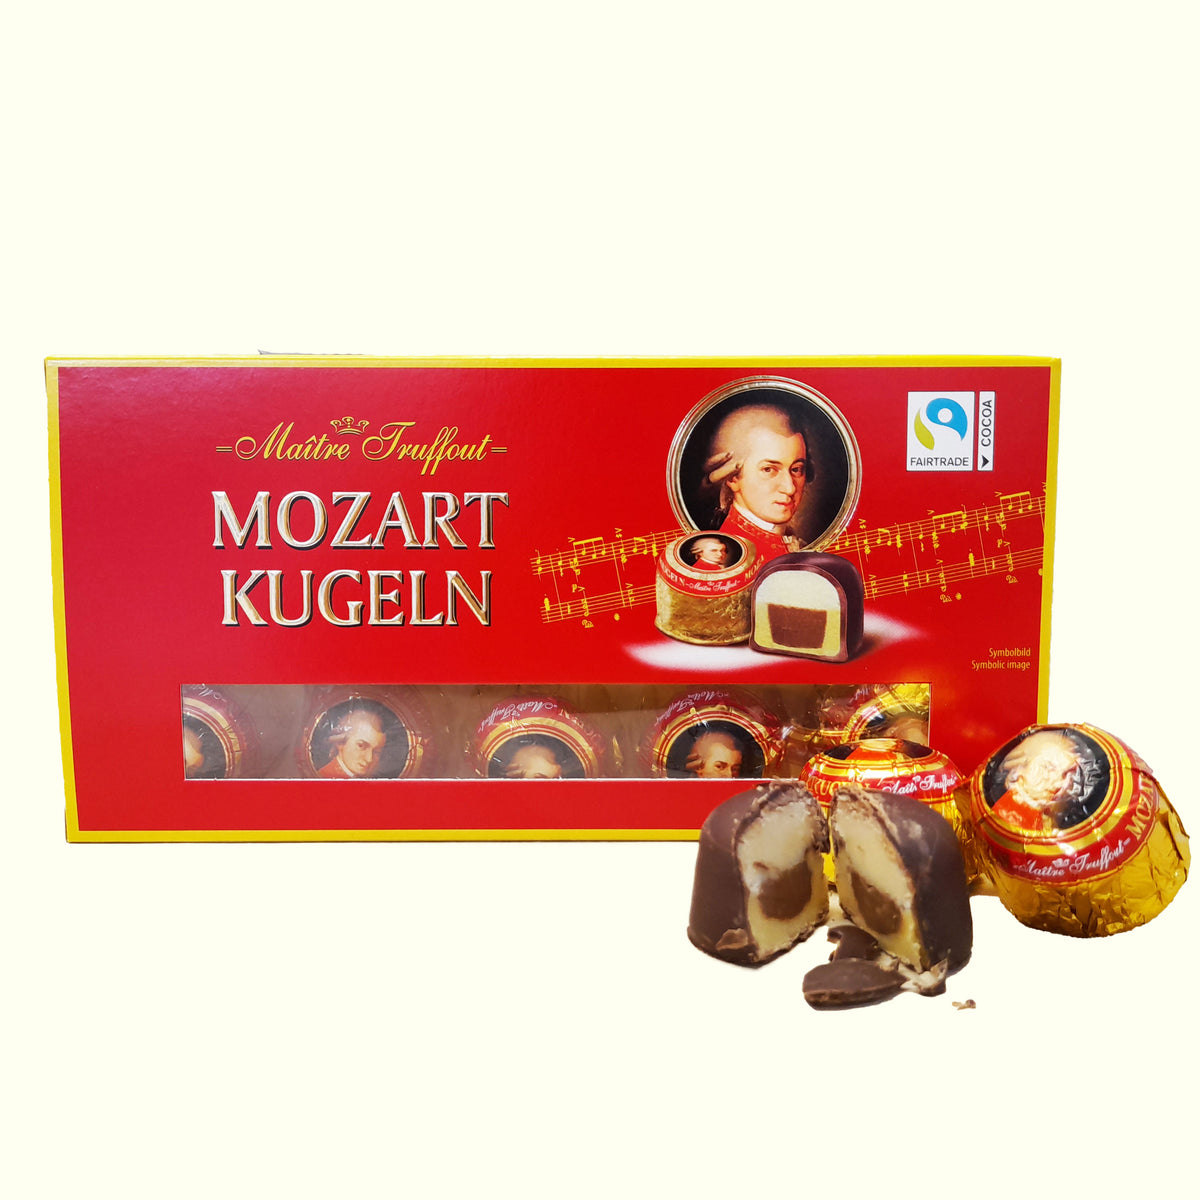 Maître Truffout Mozart Kugeln Pralinen 200g